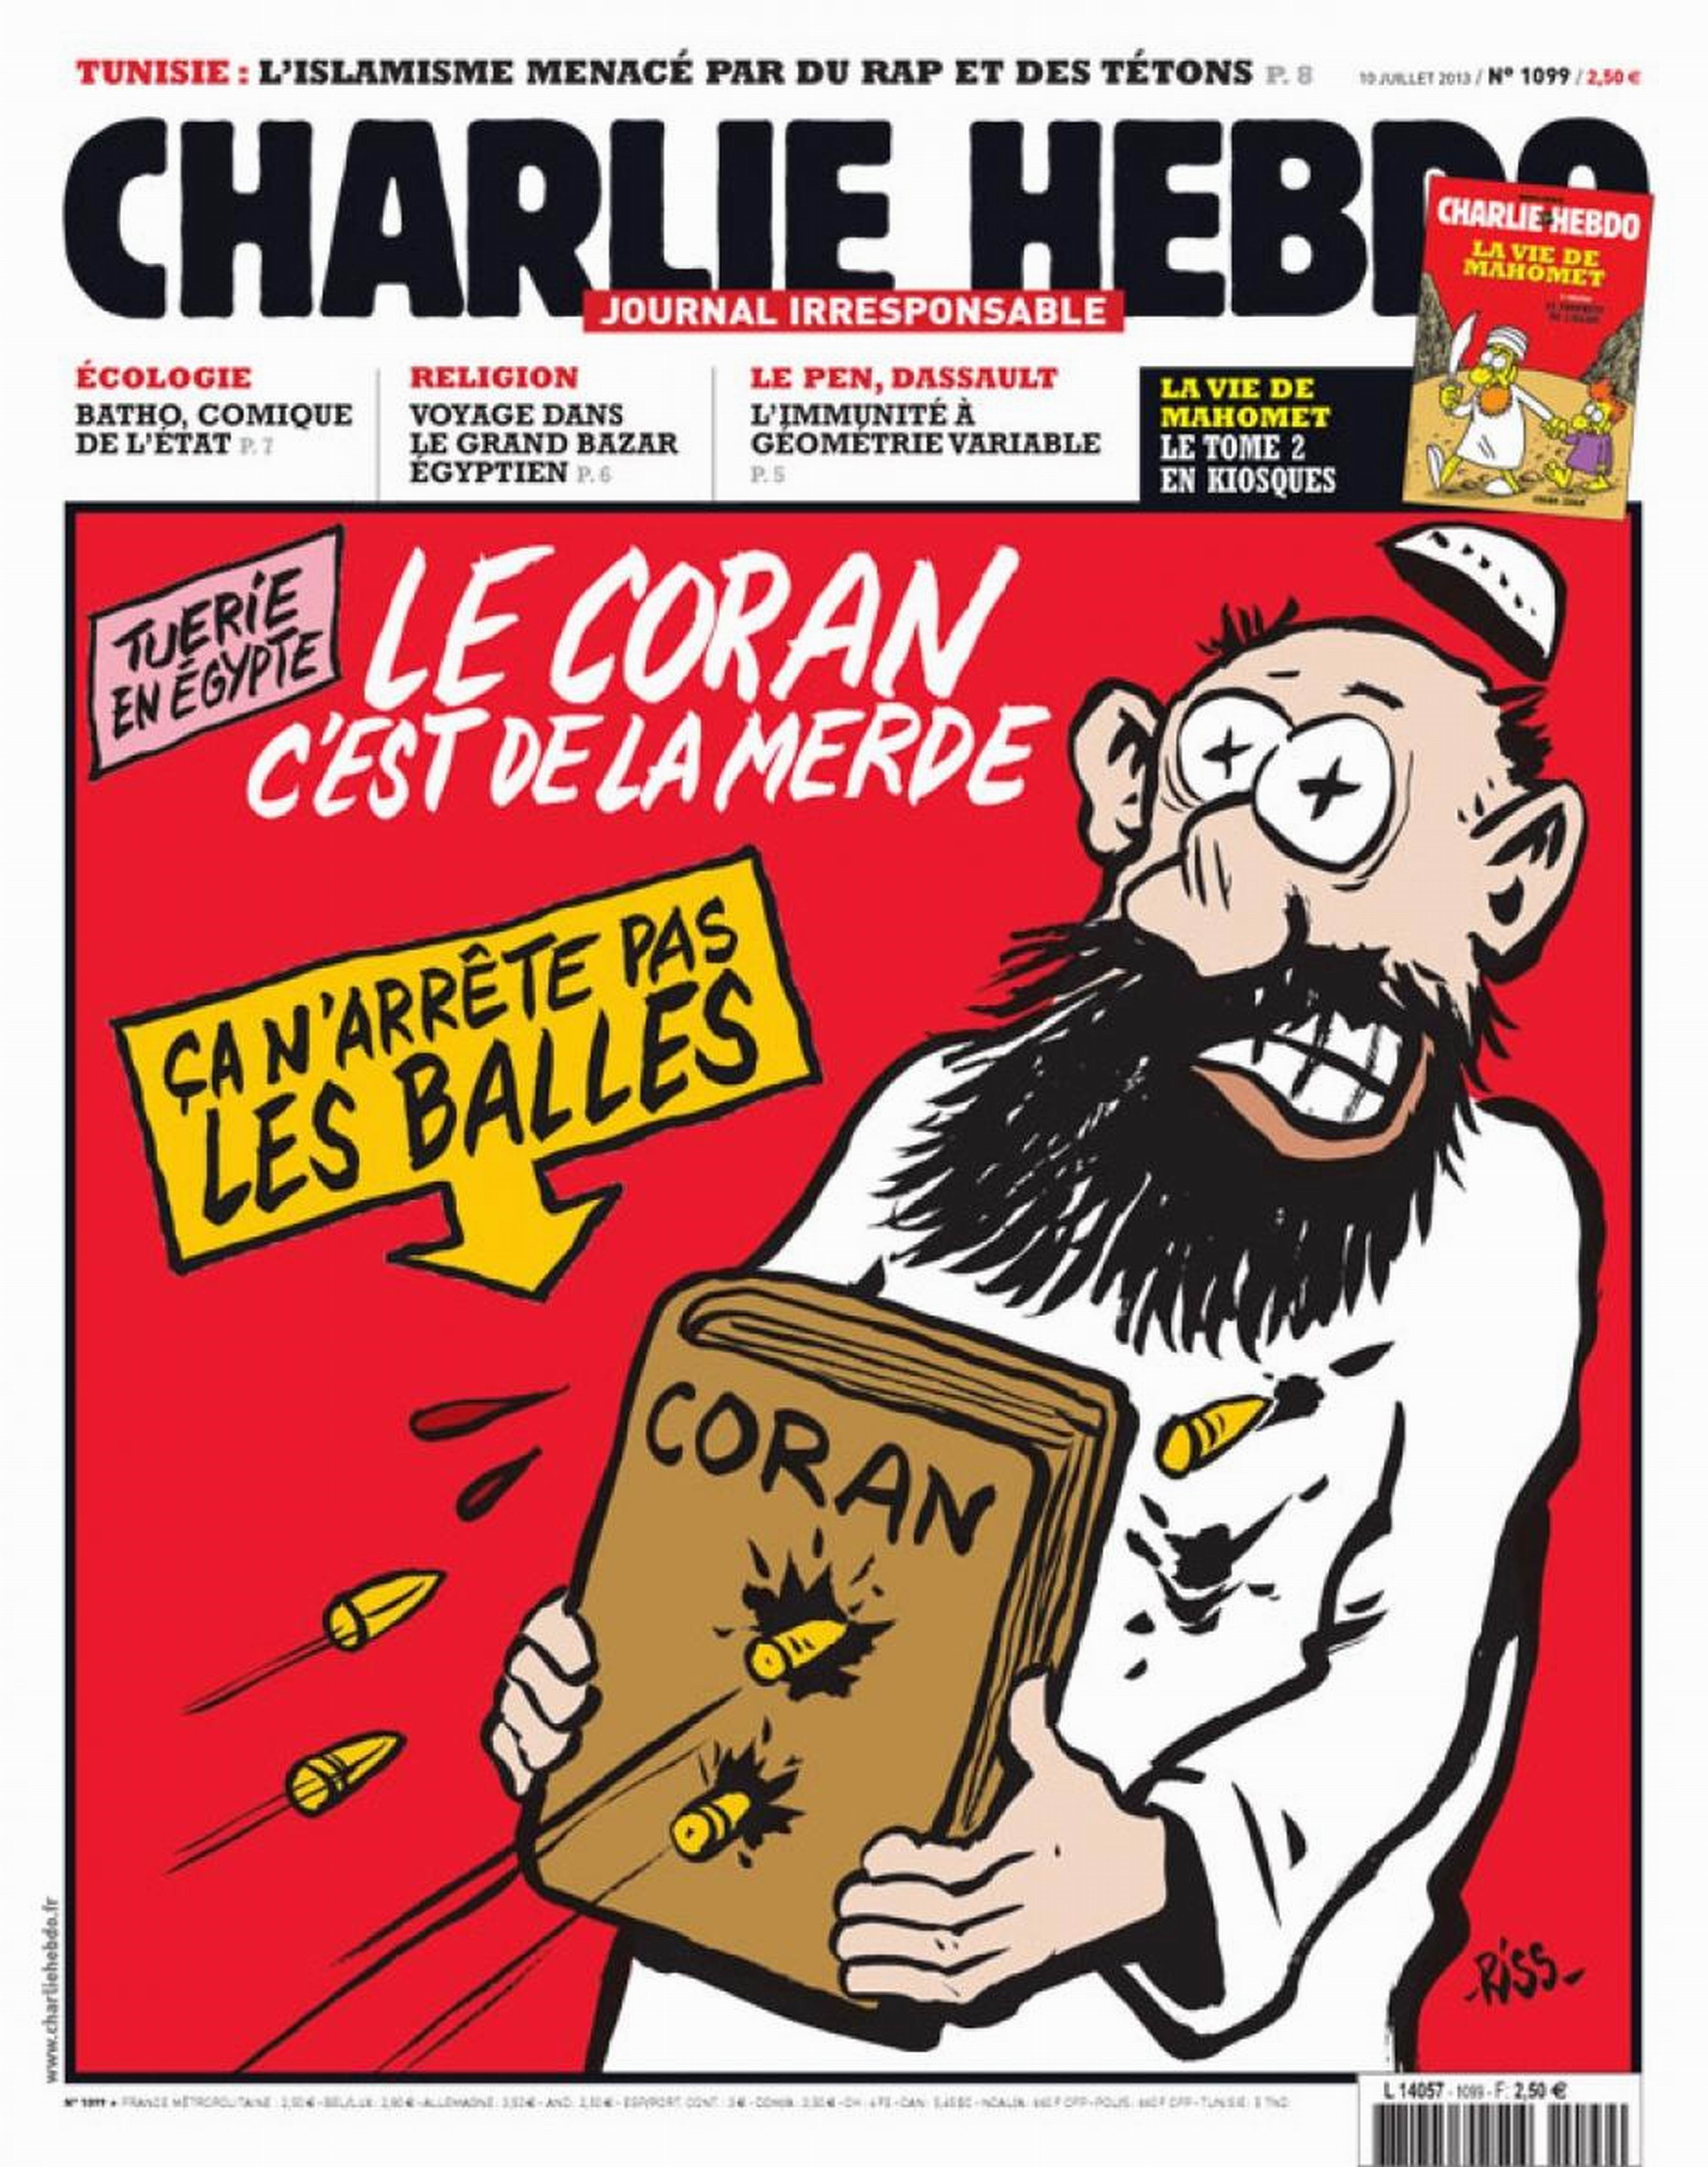 13 Crazy Charlie Hebdo Covers